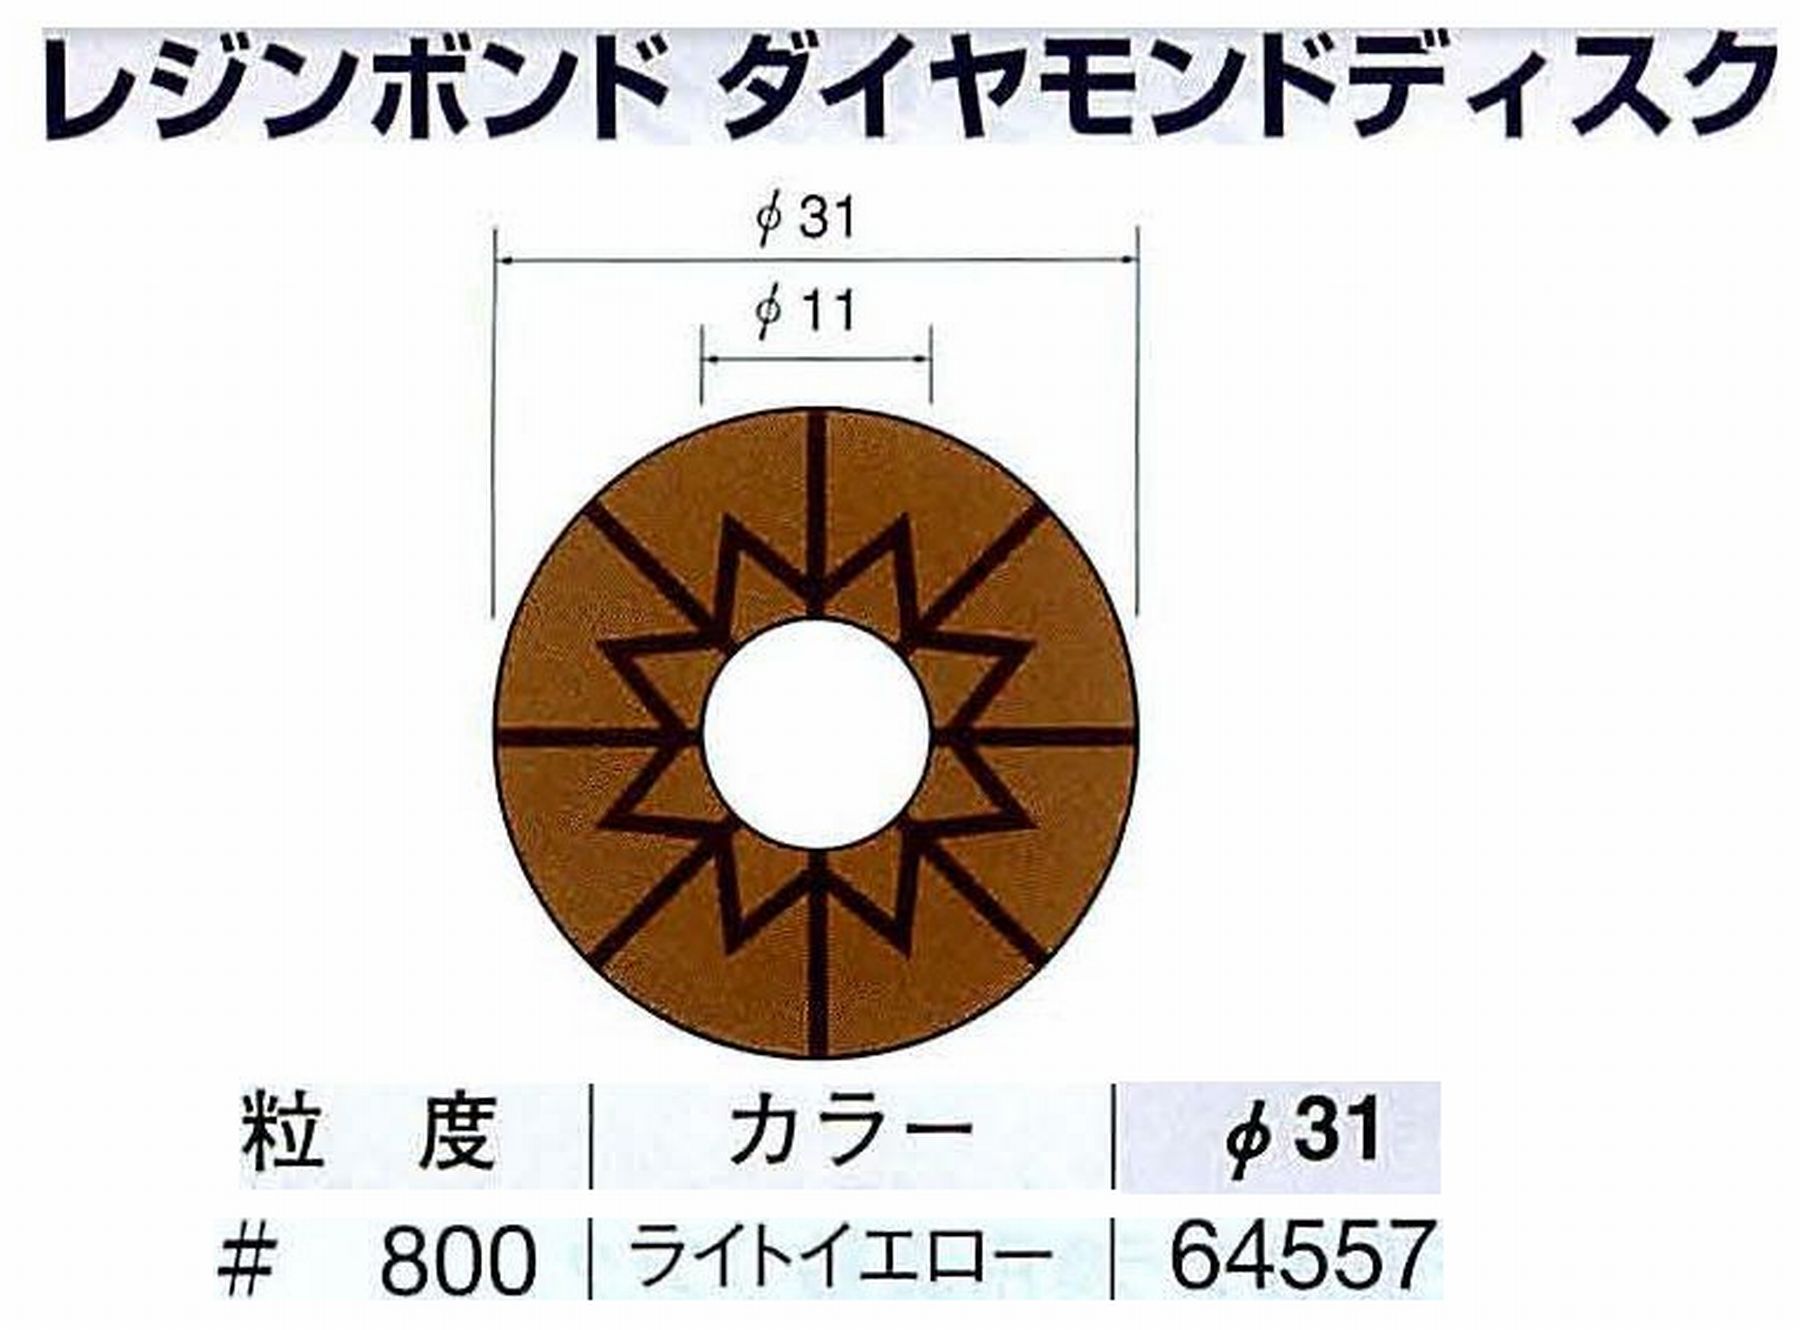 ナカニシ/NAKANISHI アングルグラインダ(電動・エアー) アングルアタッチメント専用工具 レジンボンド ダイヤモンドディスク(パターンタイプ) 64557